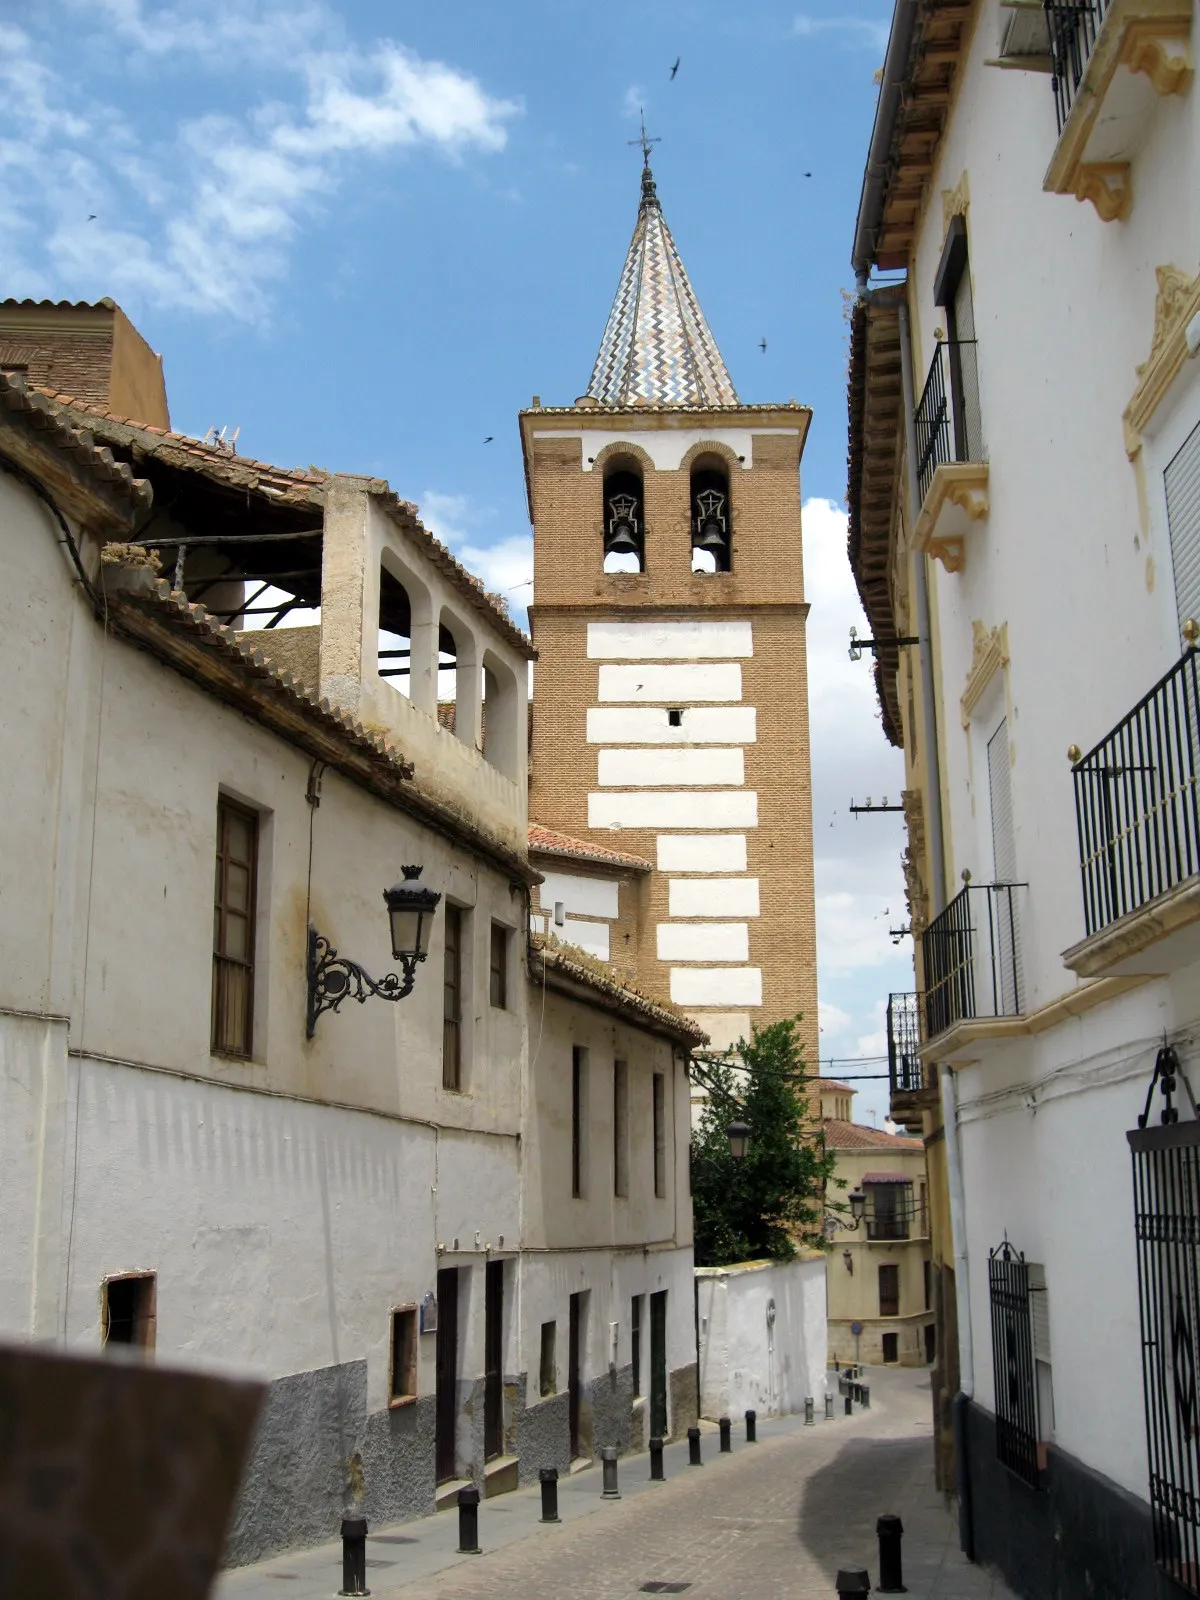 Photo showing: Vista de la calle Santiago de Guadix (Granada), con el campanario del convento de Santiago al fondo.